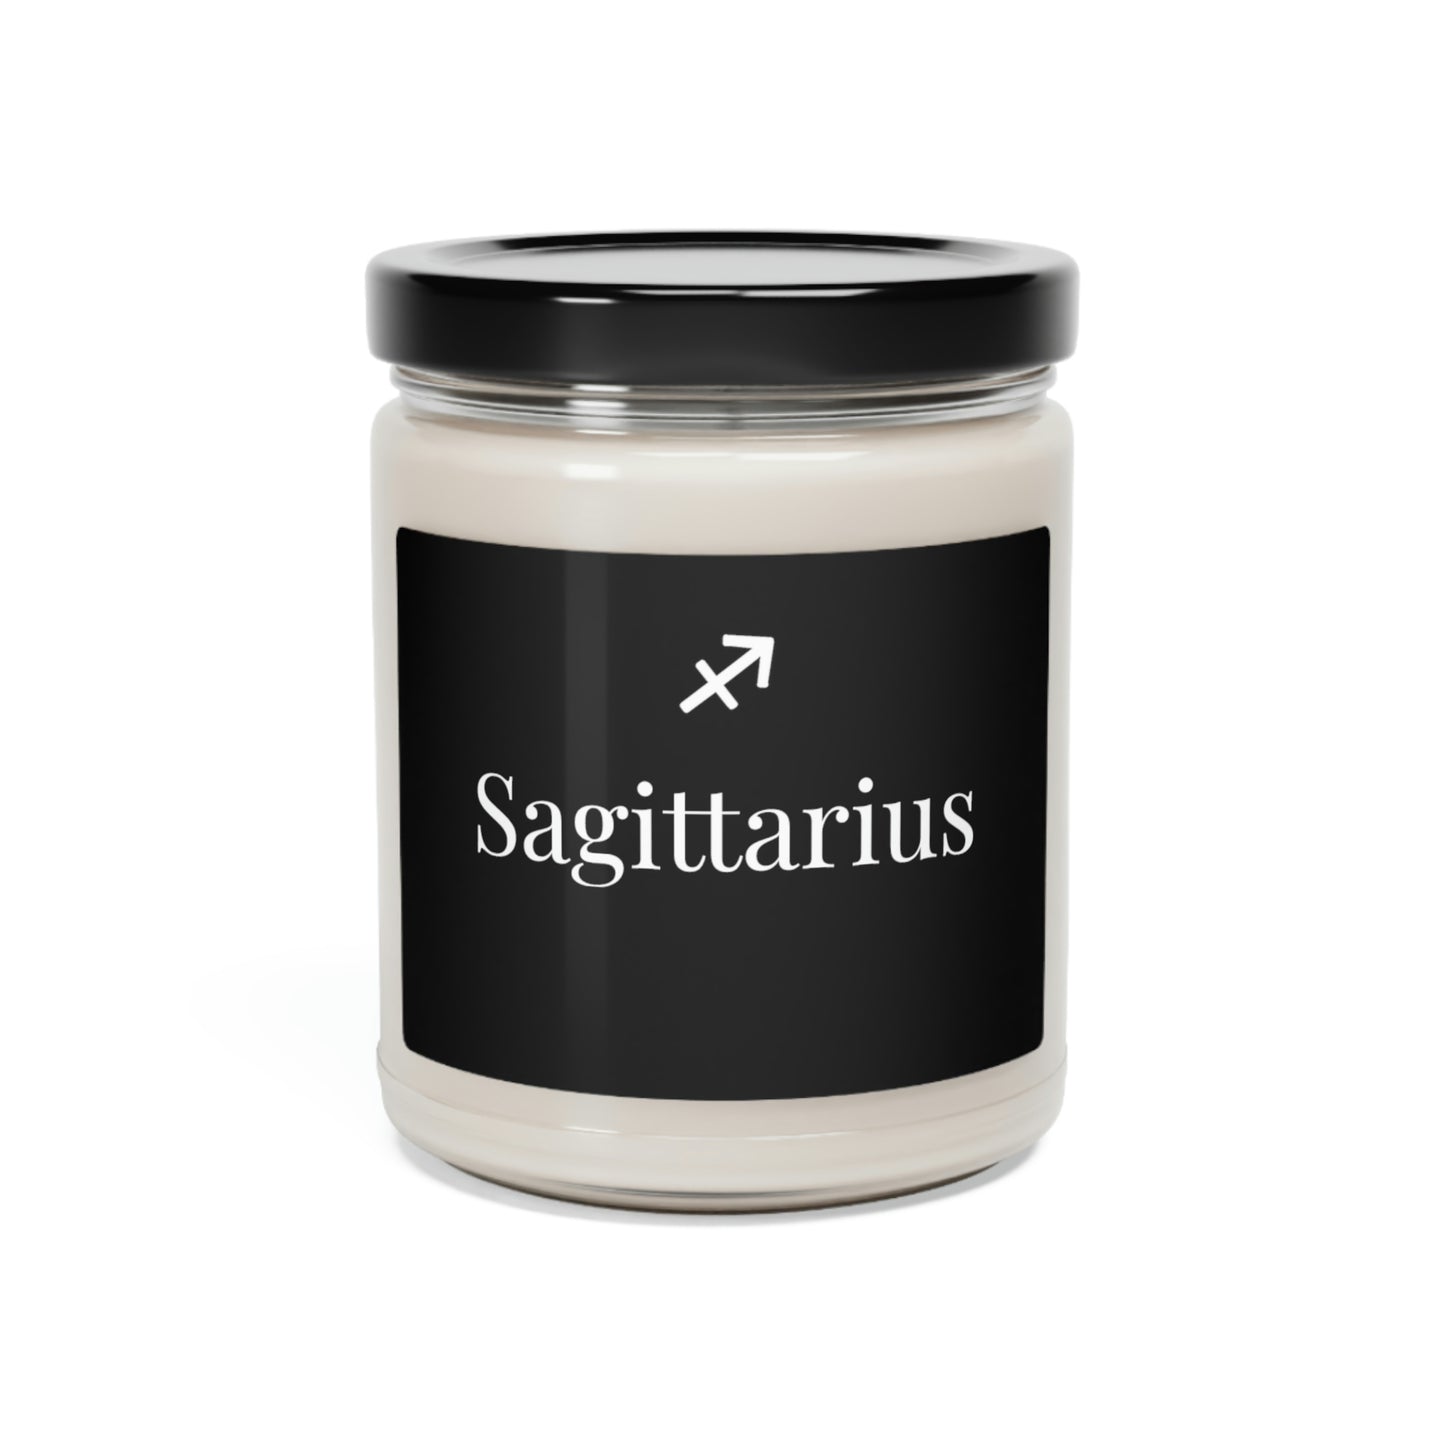 Sagittarius Scented Candle